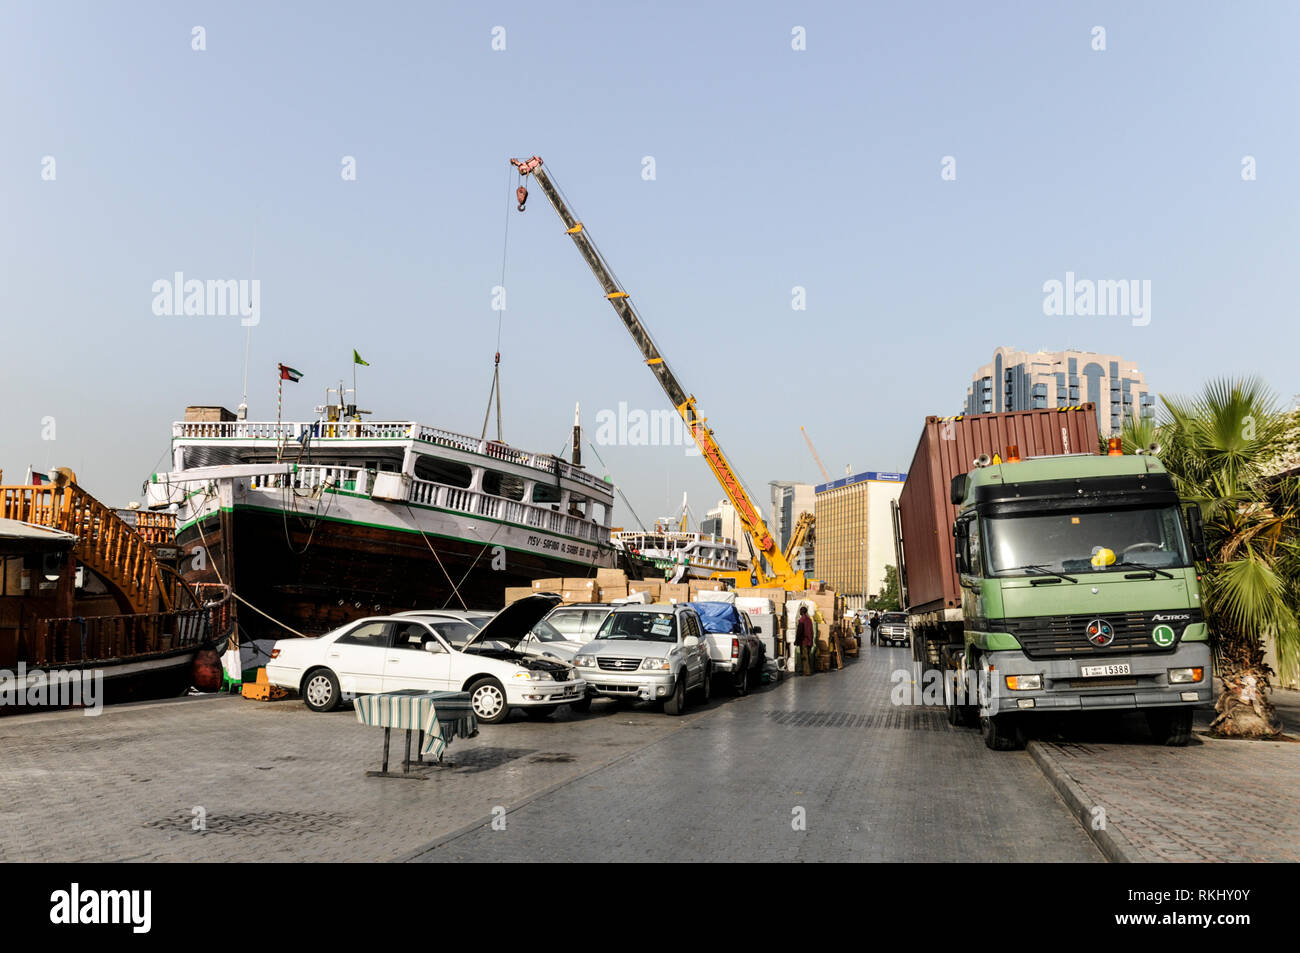 Une scène mouvementée sur le quai de la Crique de Dubaï.. Dows étant chargés de marchandises et de voitures pour les ports du golfe, l'Inde et l'Afrique de l'Est. Rendez-vous sur l'océan Banque D'Images